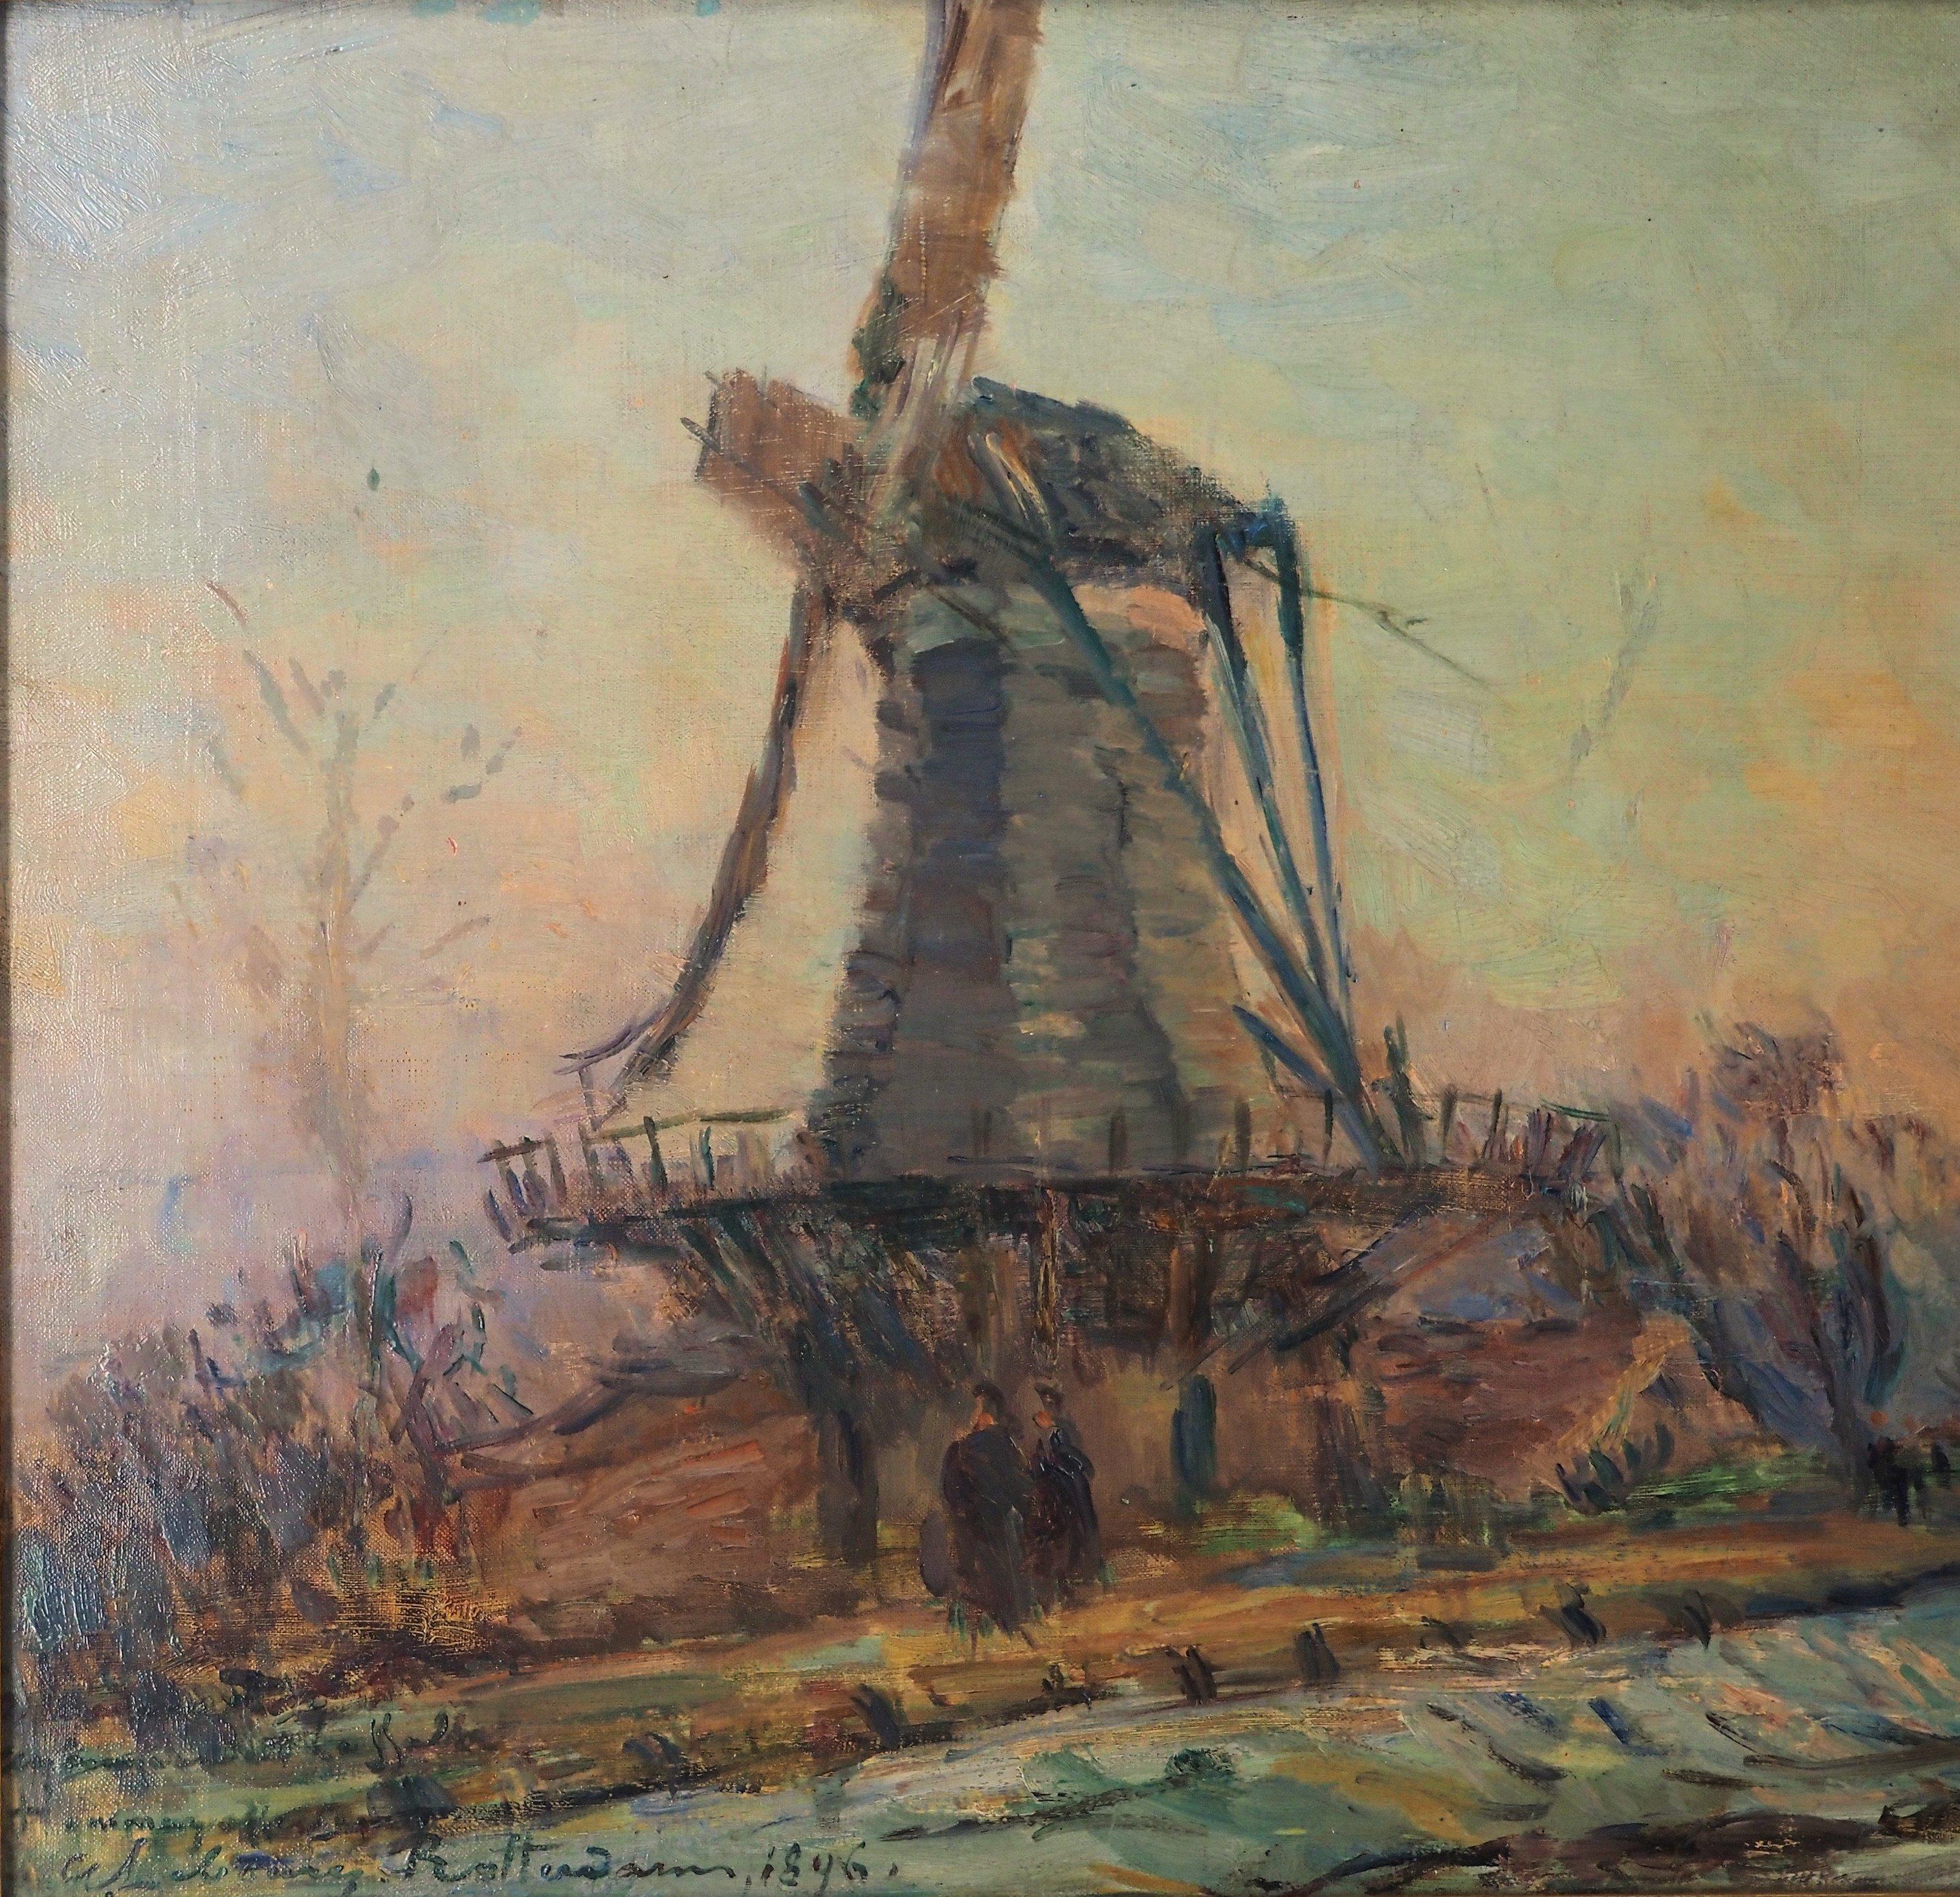 Albert Marie LEBOURG (1849-1928)
Hollande : Moulin à vent et coucher de soleil près de Rotterdam, 1896

Huile sur toile
Signé en bas à gauche
Dedic à 